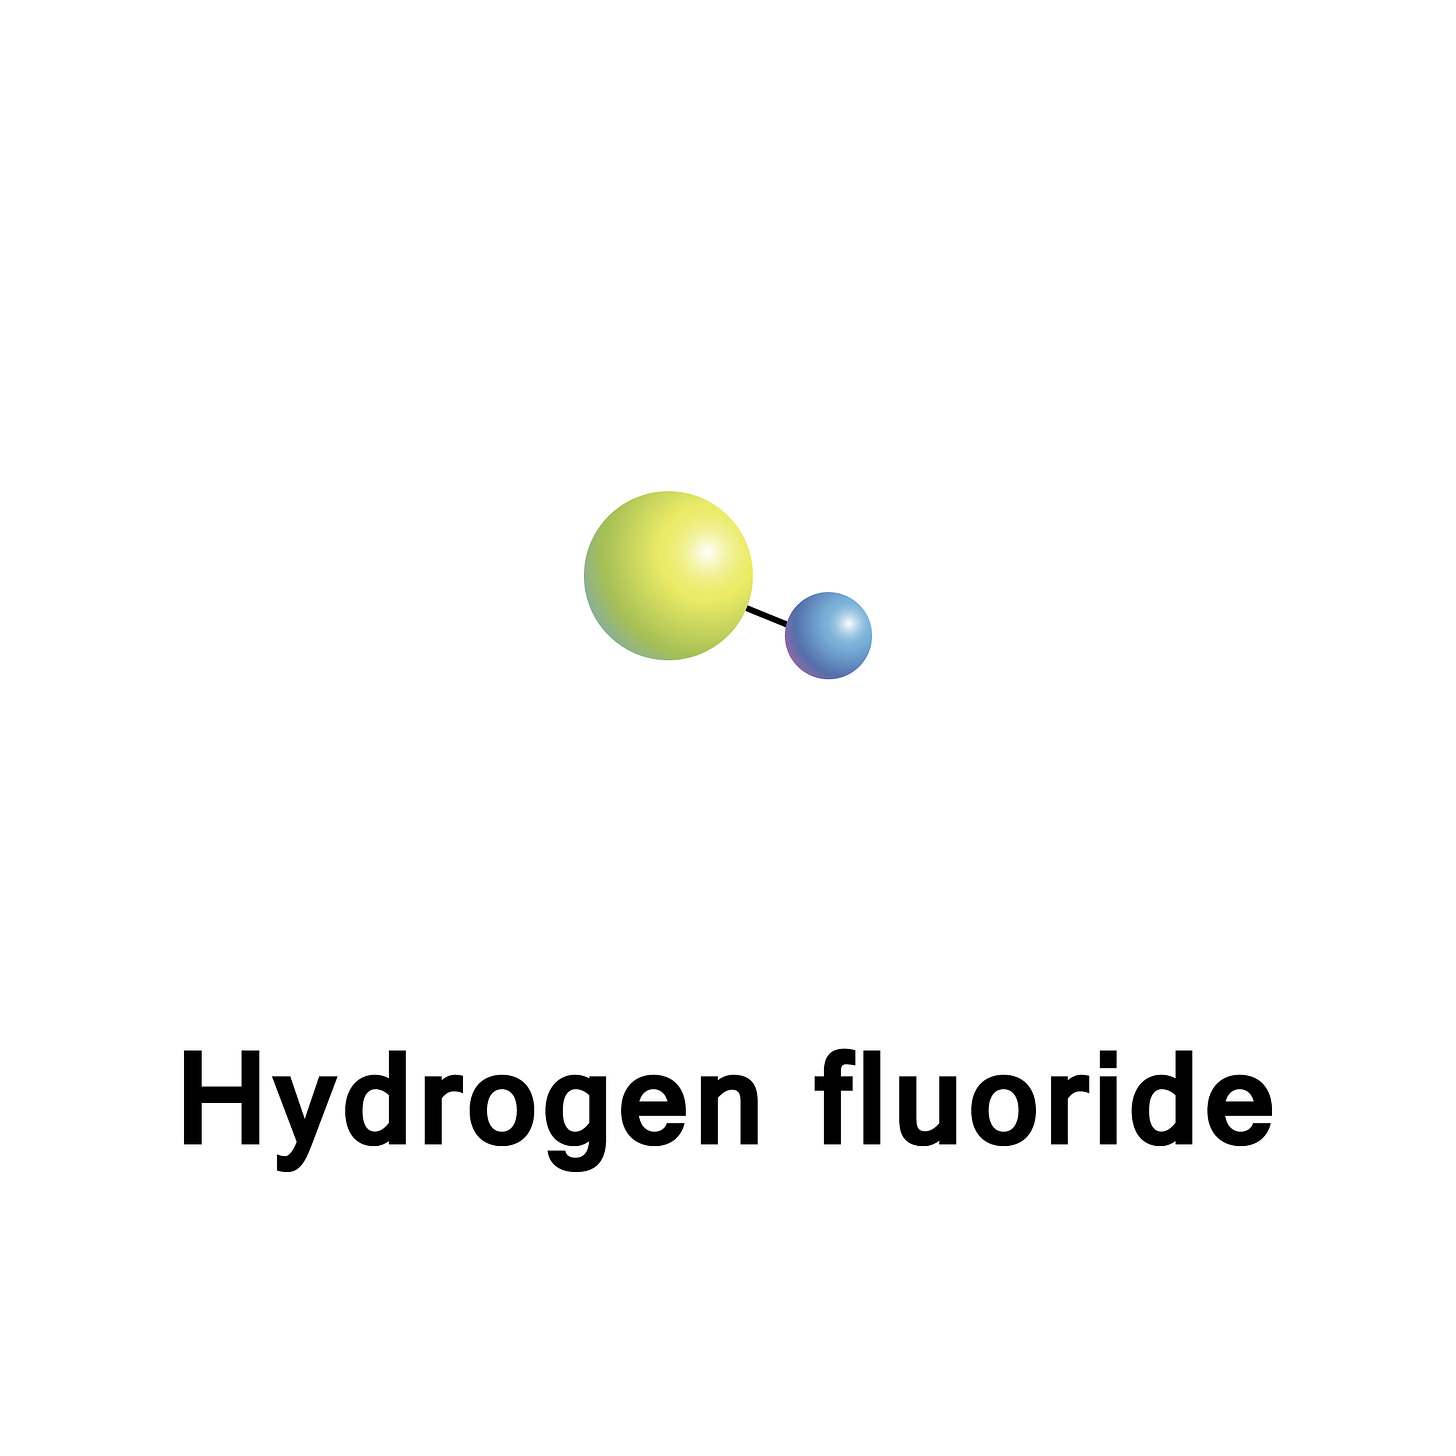 Hydrogen fluoride shutterstock_643500772